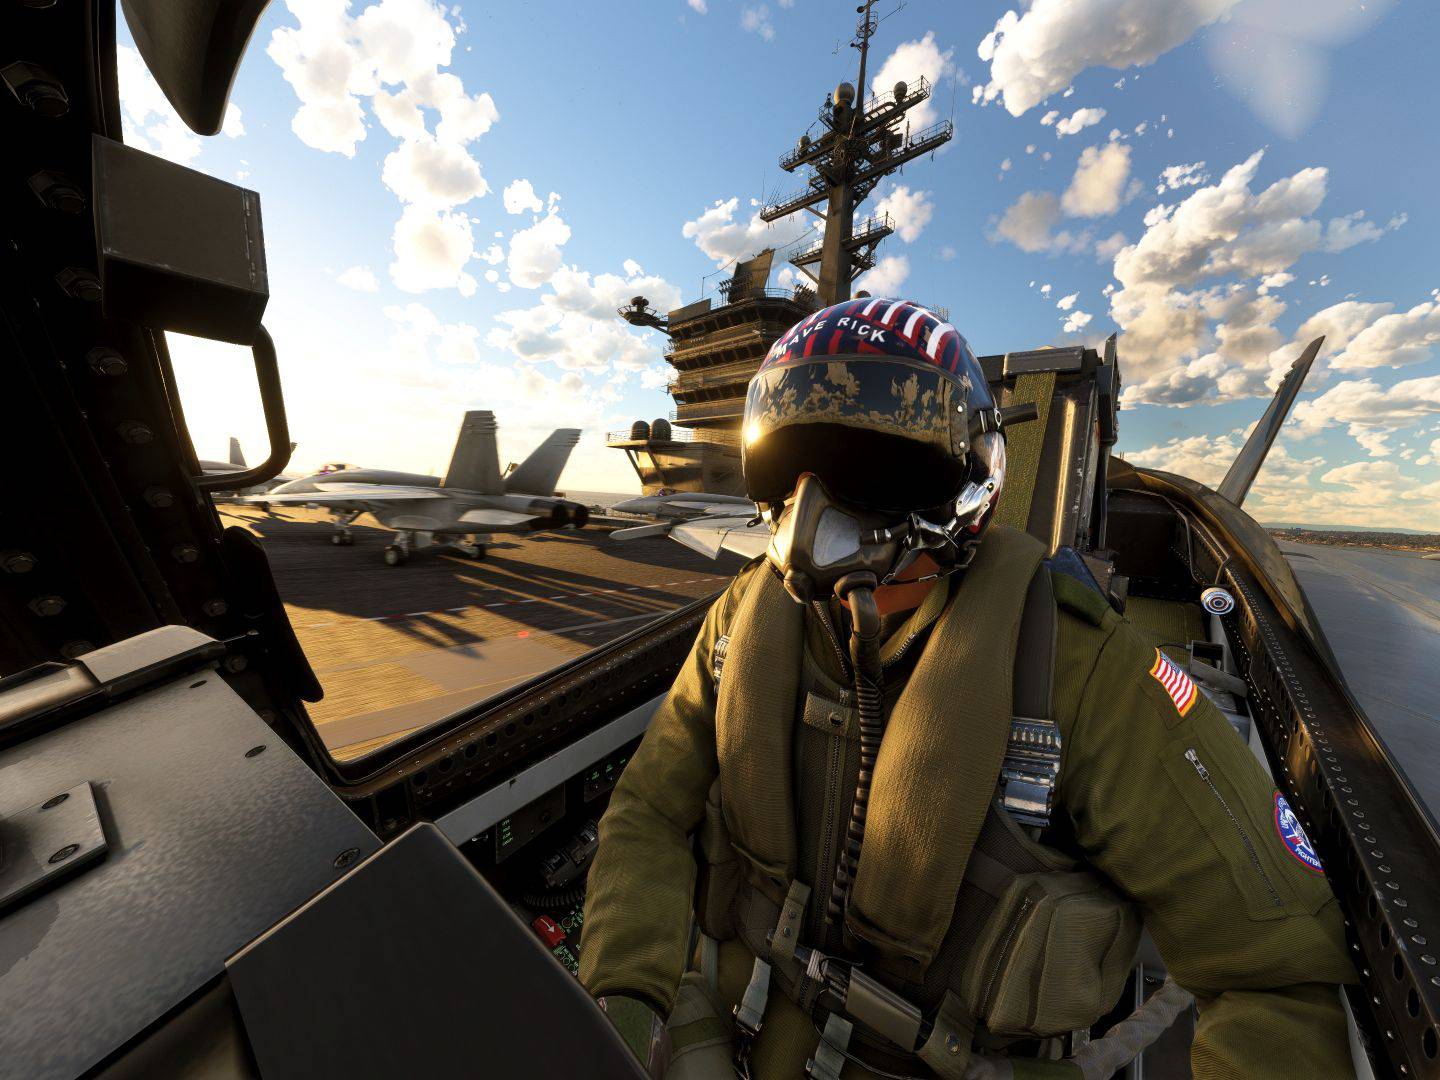 Microsoft Flight Simulator anunció la expansión de Top Gun y un